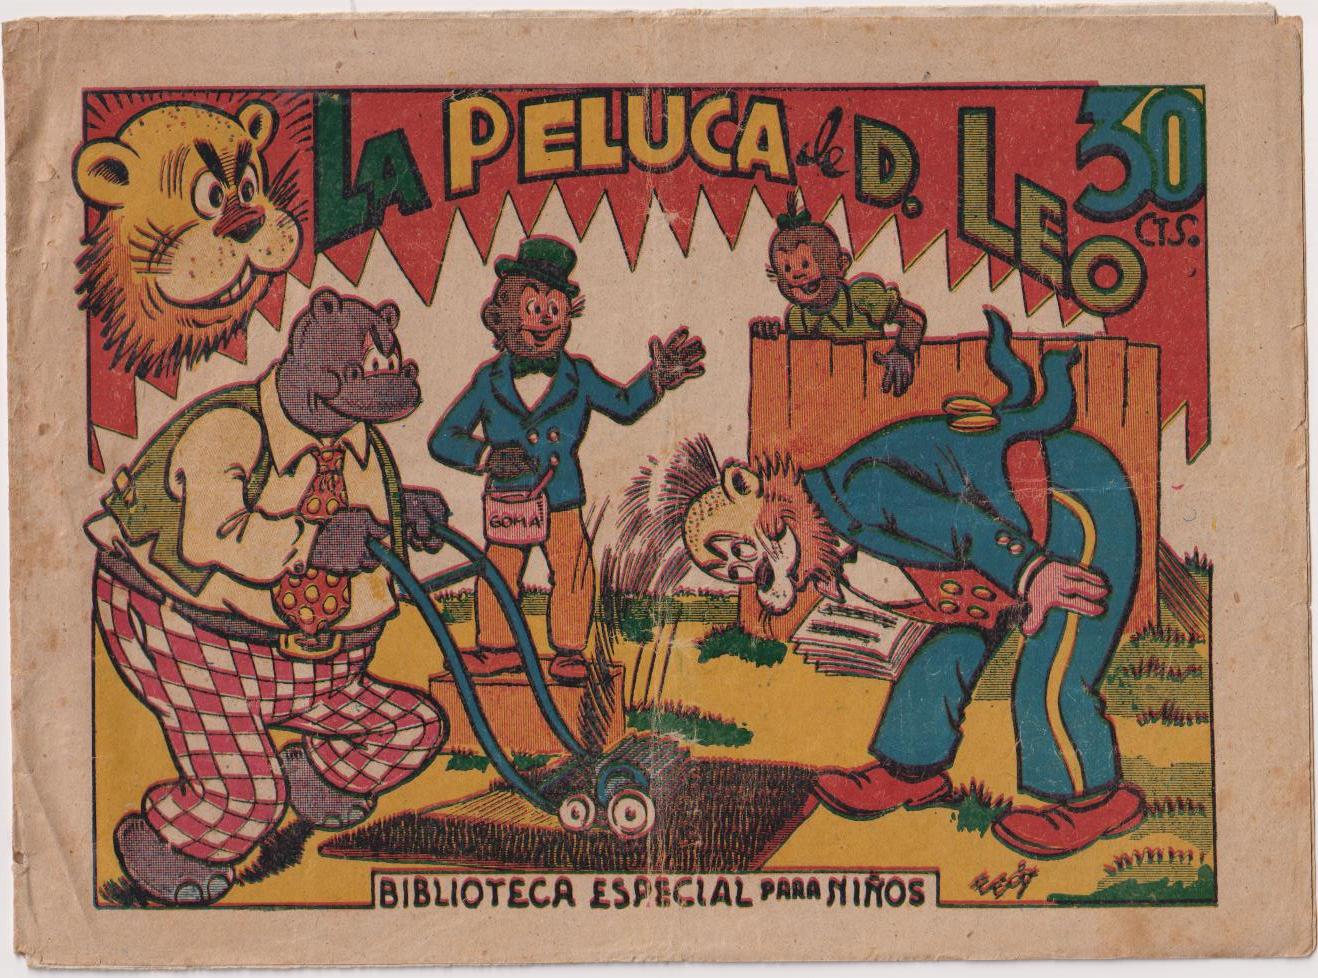 La Peluca de D. Leo. Biblioteca Especial para Niños. Marco 1943